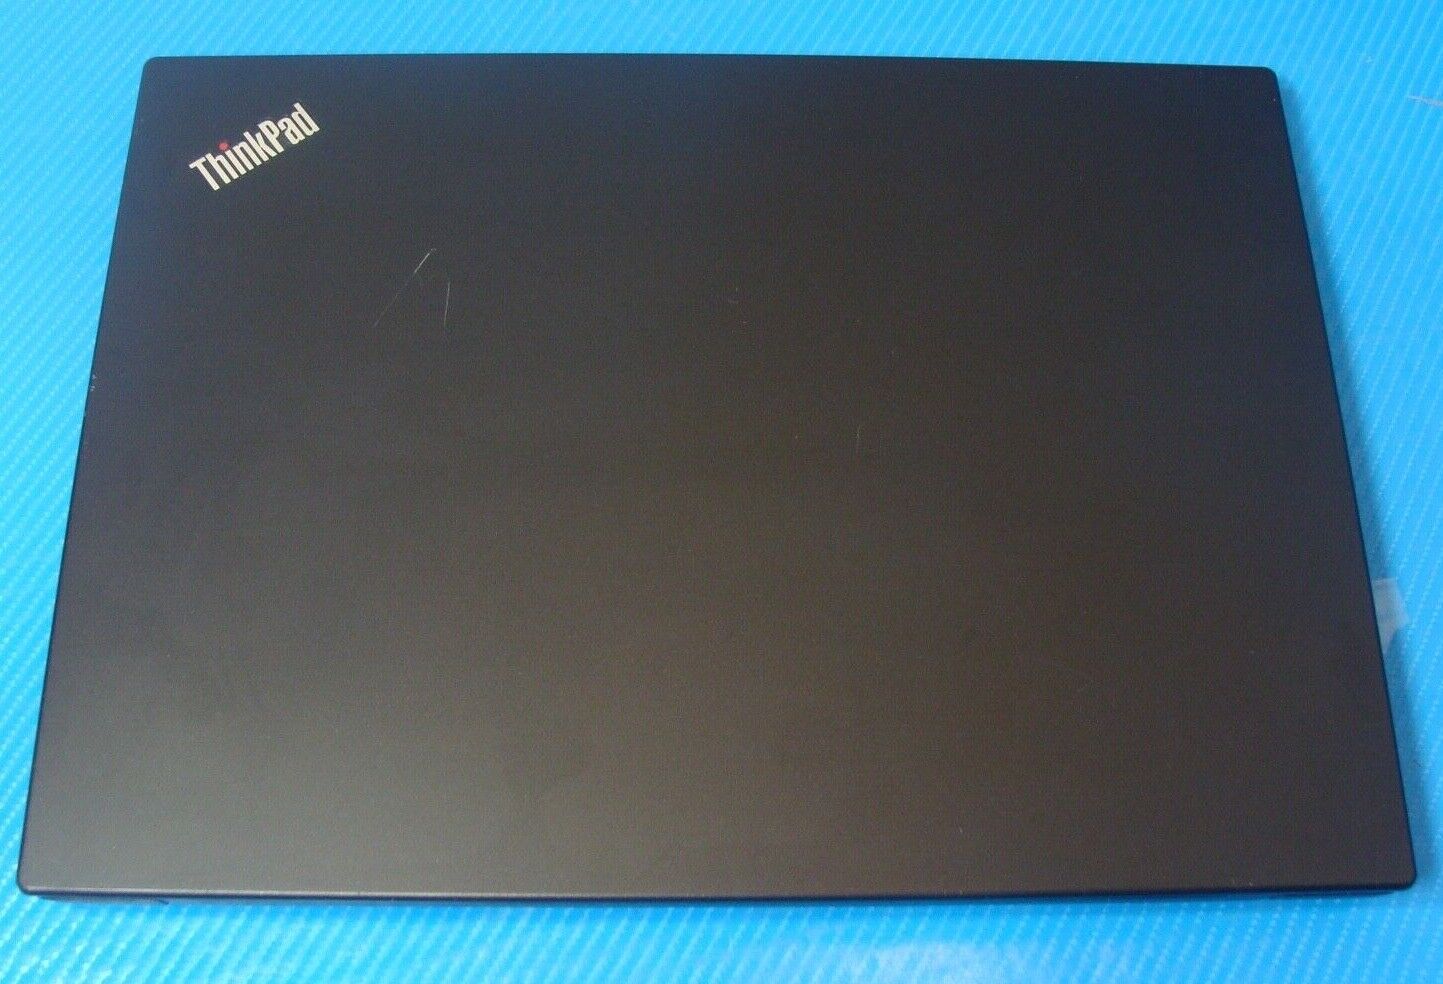 Lenovo ThinkPad E495 14